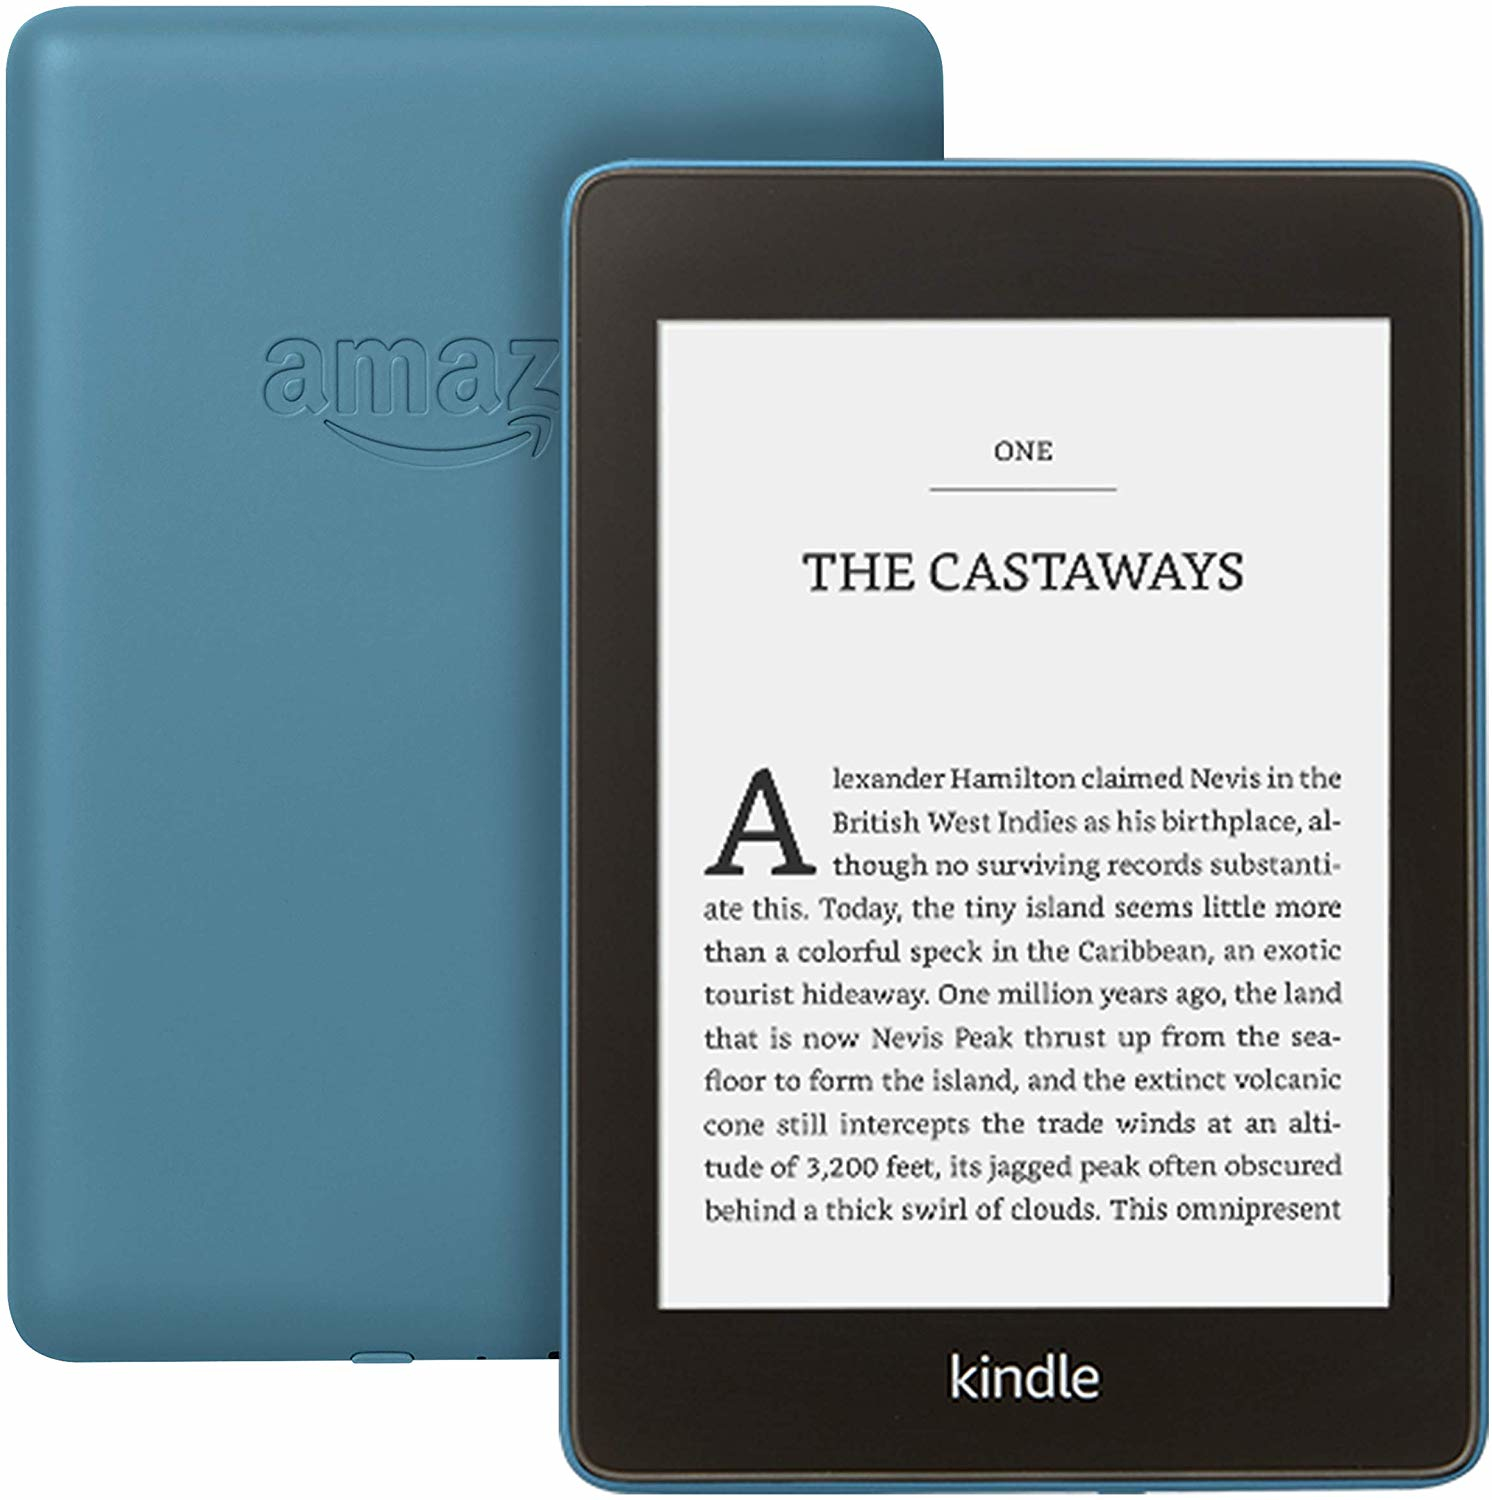 Lettore eBook Amazon Kindle Paperwhite lettore e-book Touch screen 8 GB Wi-Fi Blu [B07S3844V8]